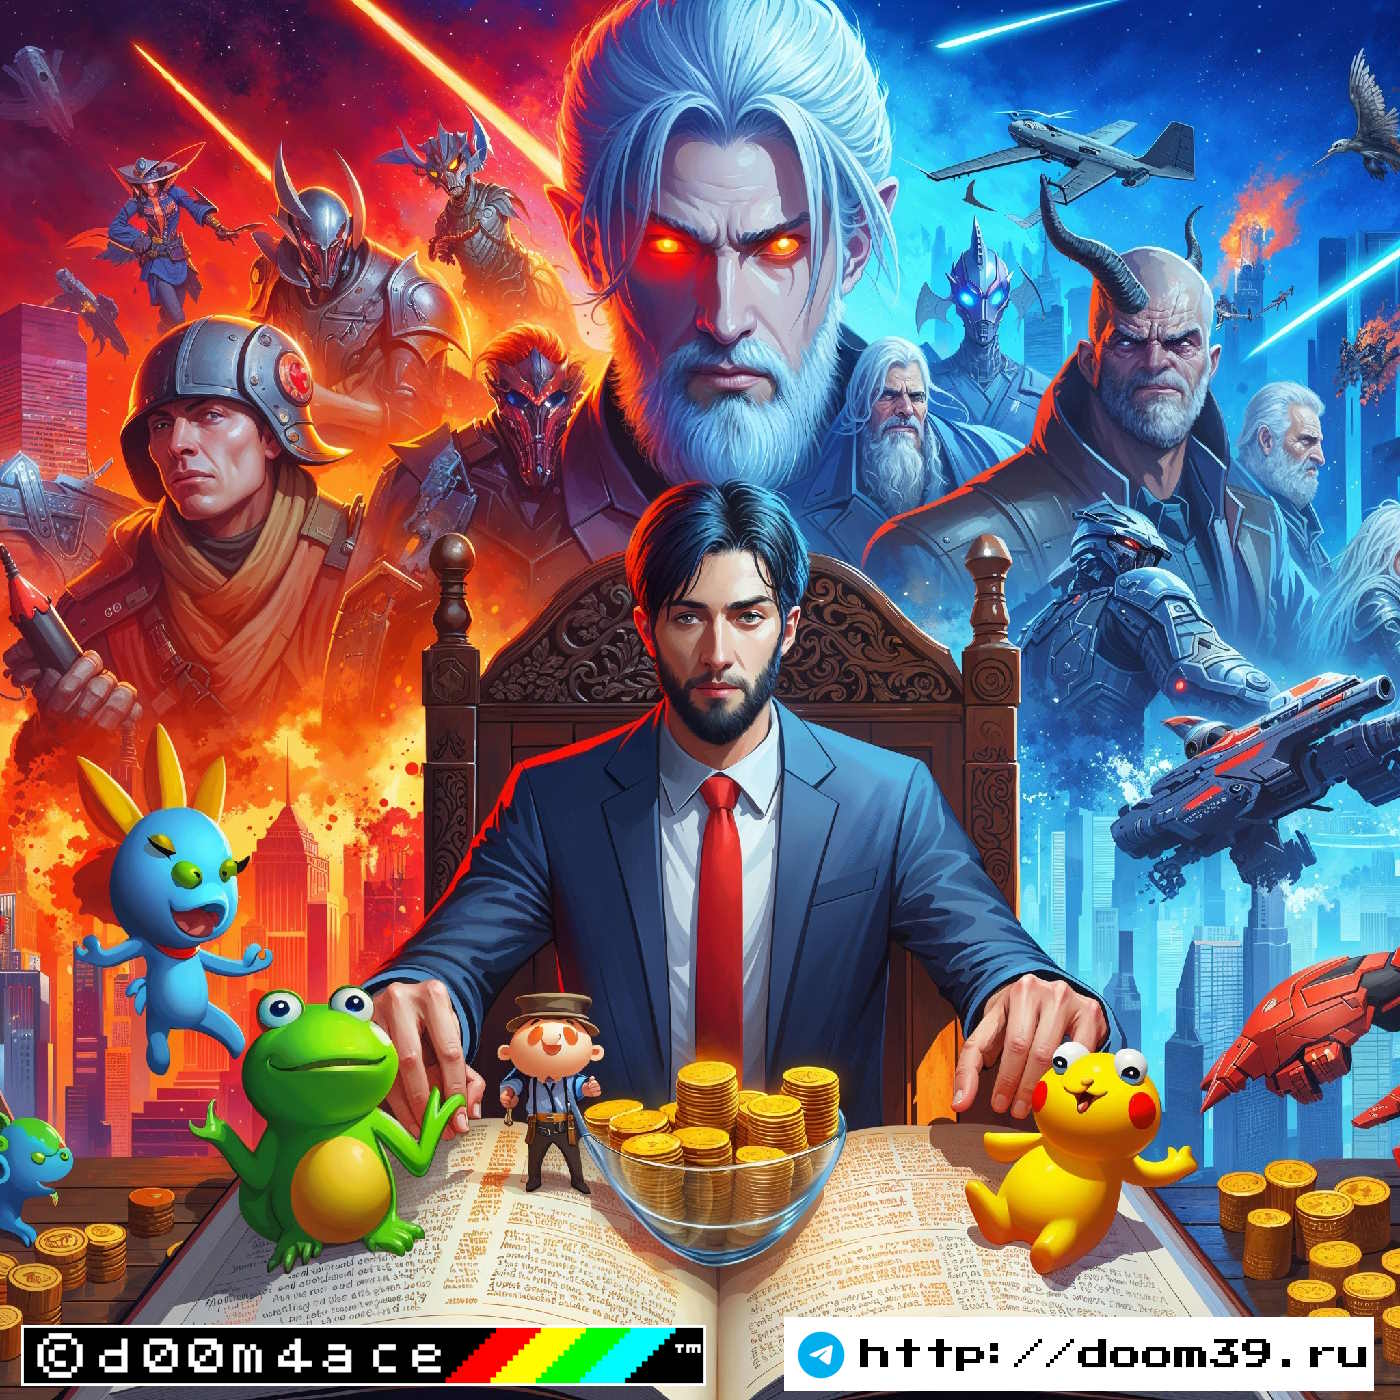 #26 Доминирование игр Free-to-Play цена акций Tencent и NetEase и плохие новости для будущих MMO игр